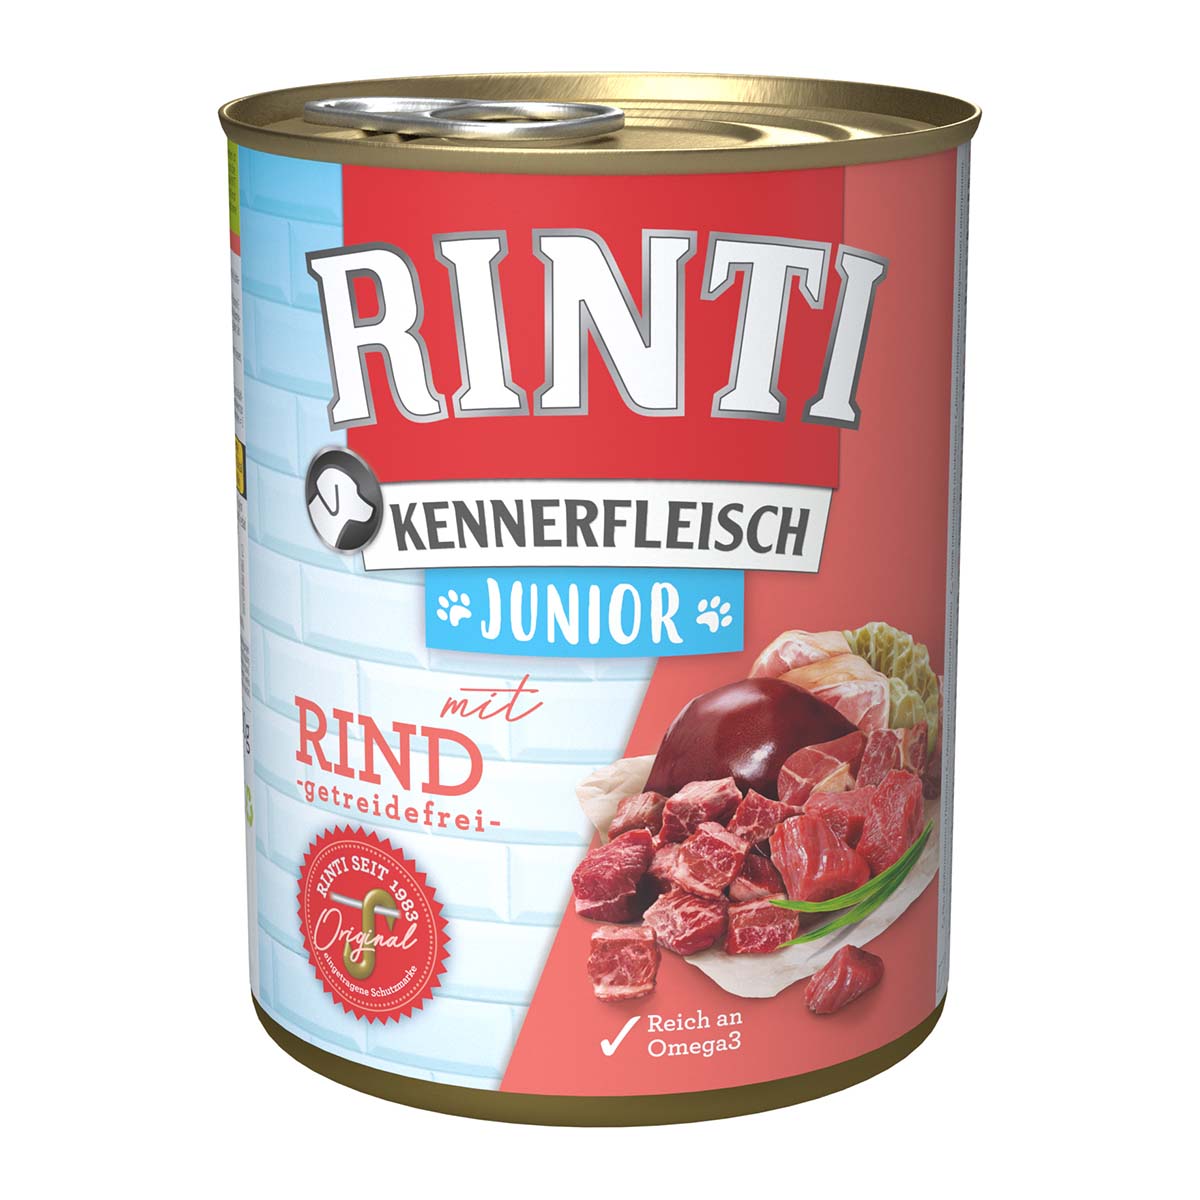 Rinti Kennerfleisch Junior mit Rind 24x800g